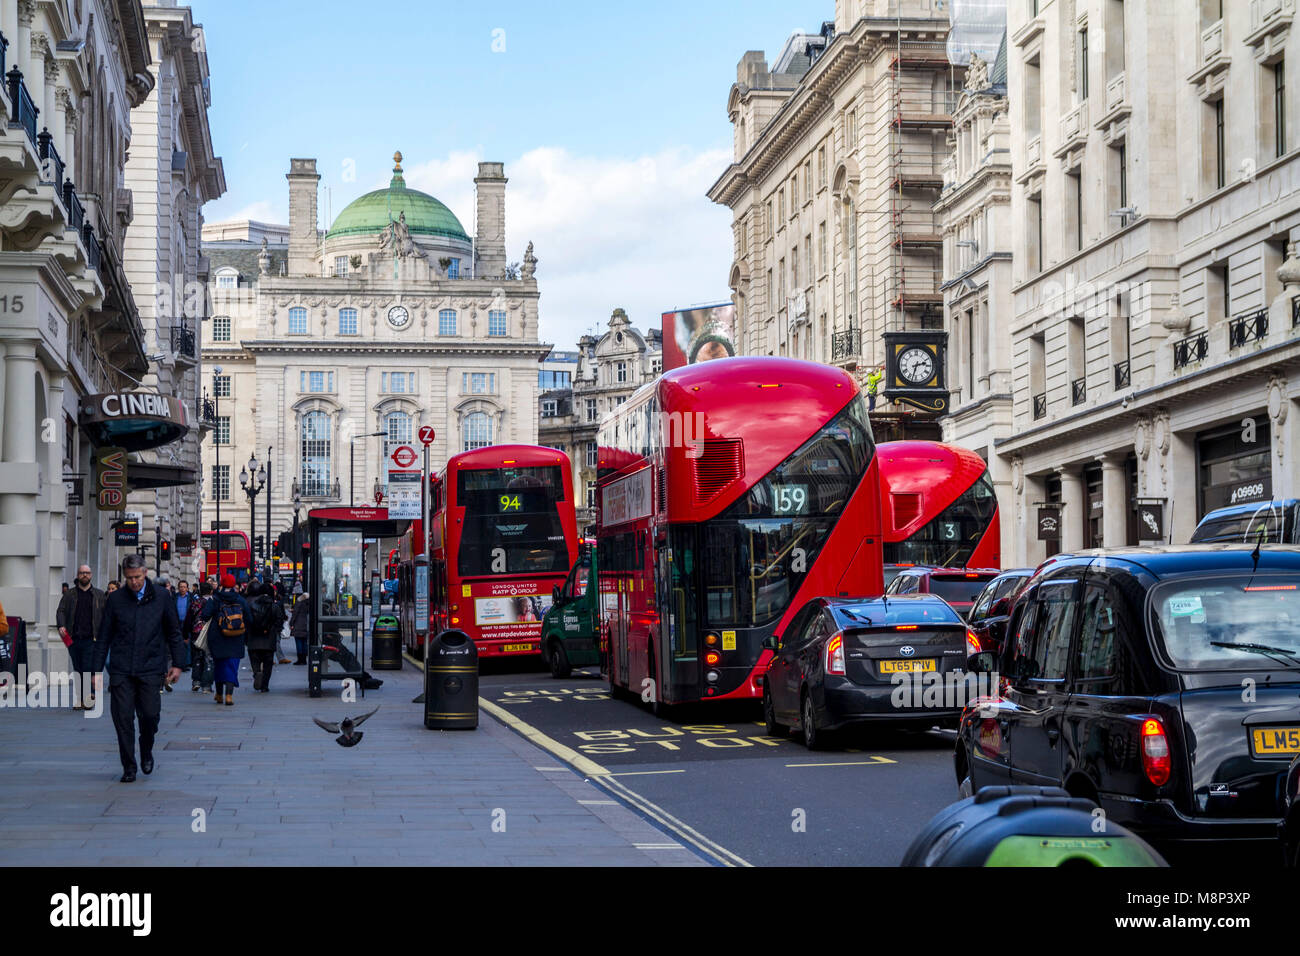 Traffico di Londra, autobus rossi, taxi neri, lower regent st, Regno Unito Londra shoppers Foto Stock